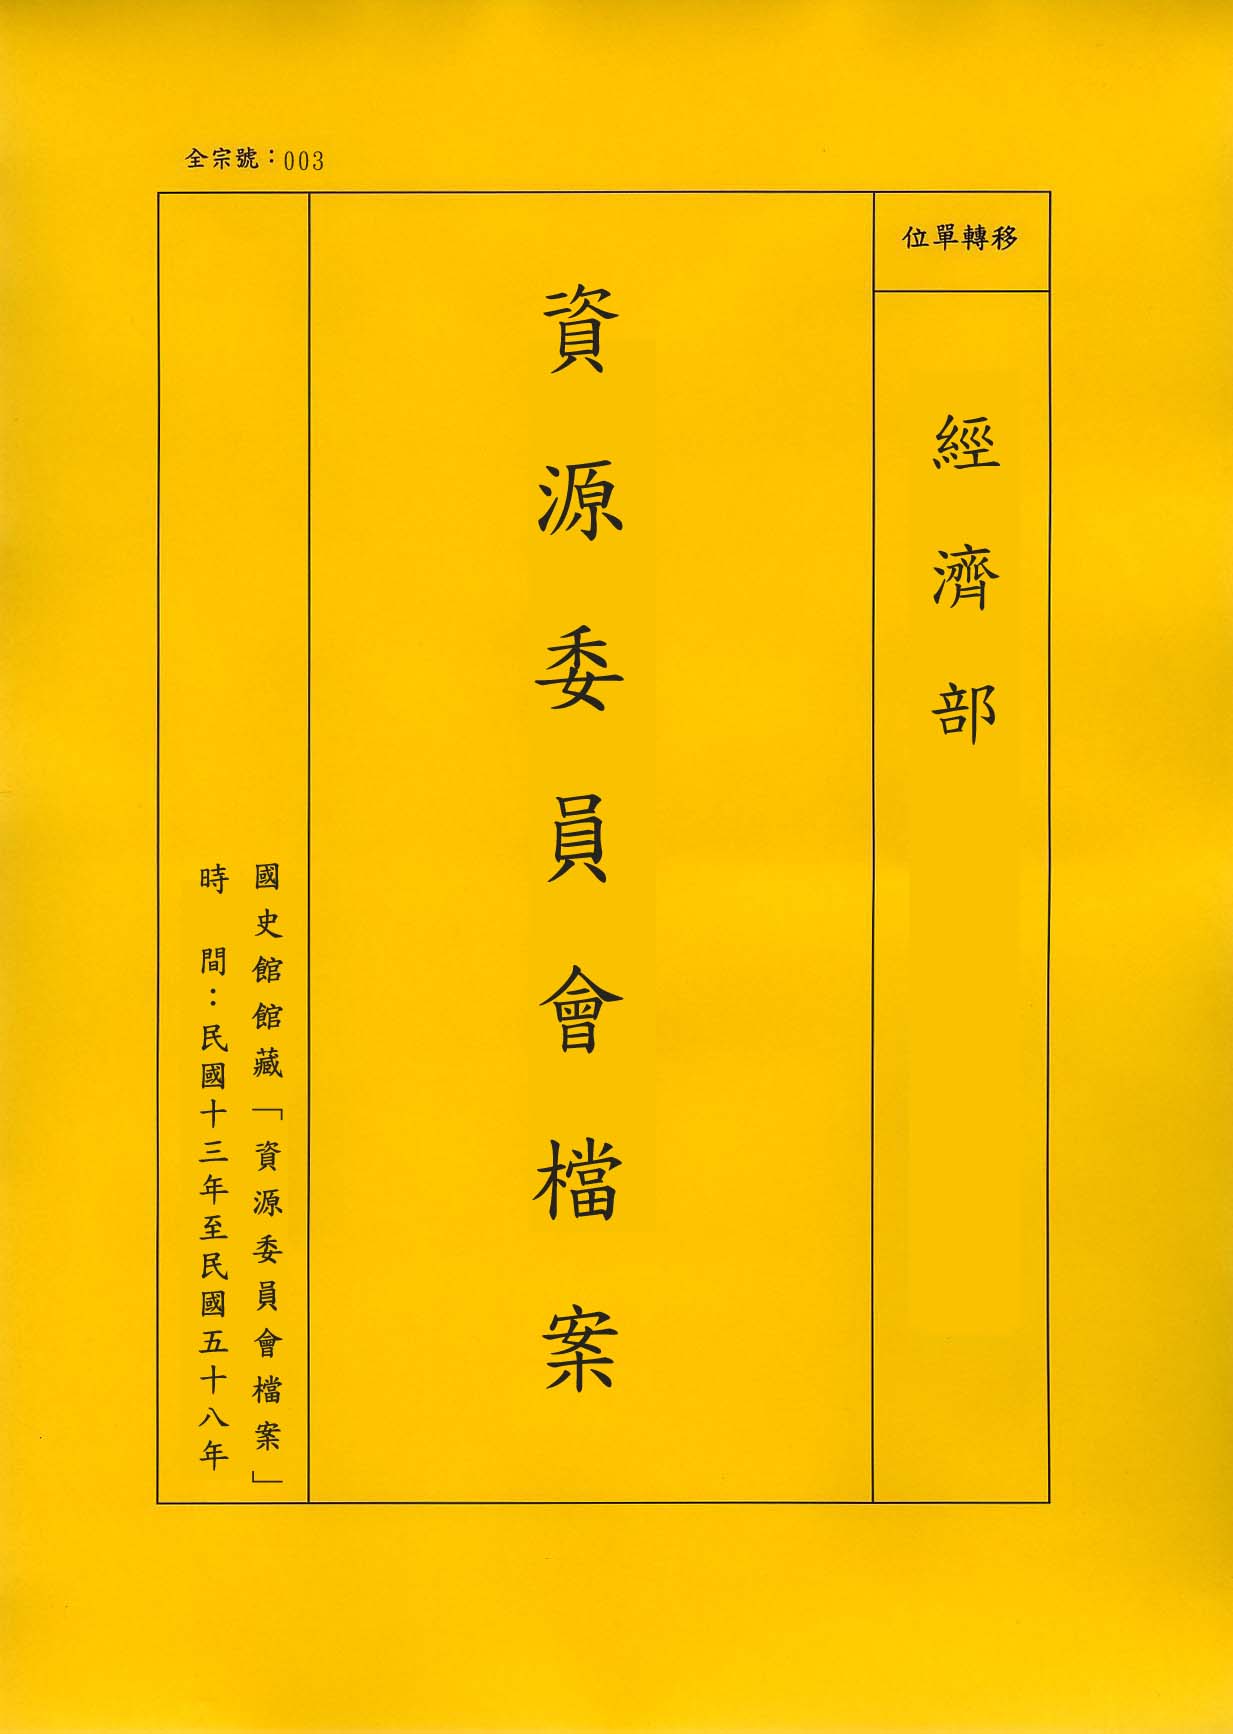 卷名:西京電廠三十六年度會計年報等(003-010403-0524)